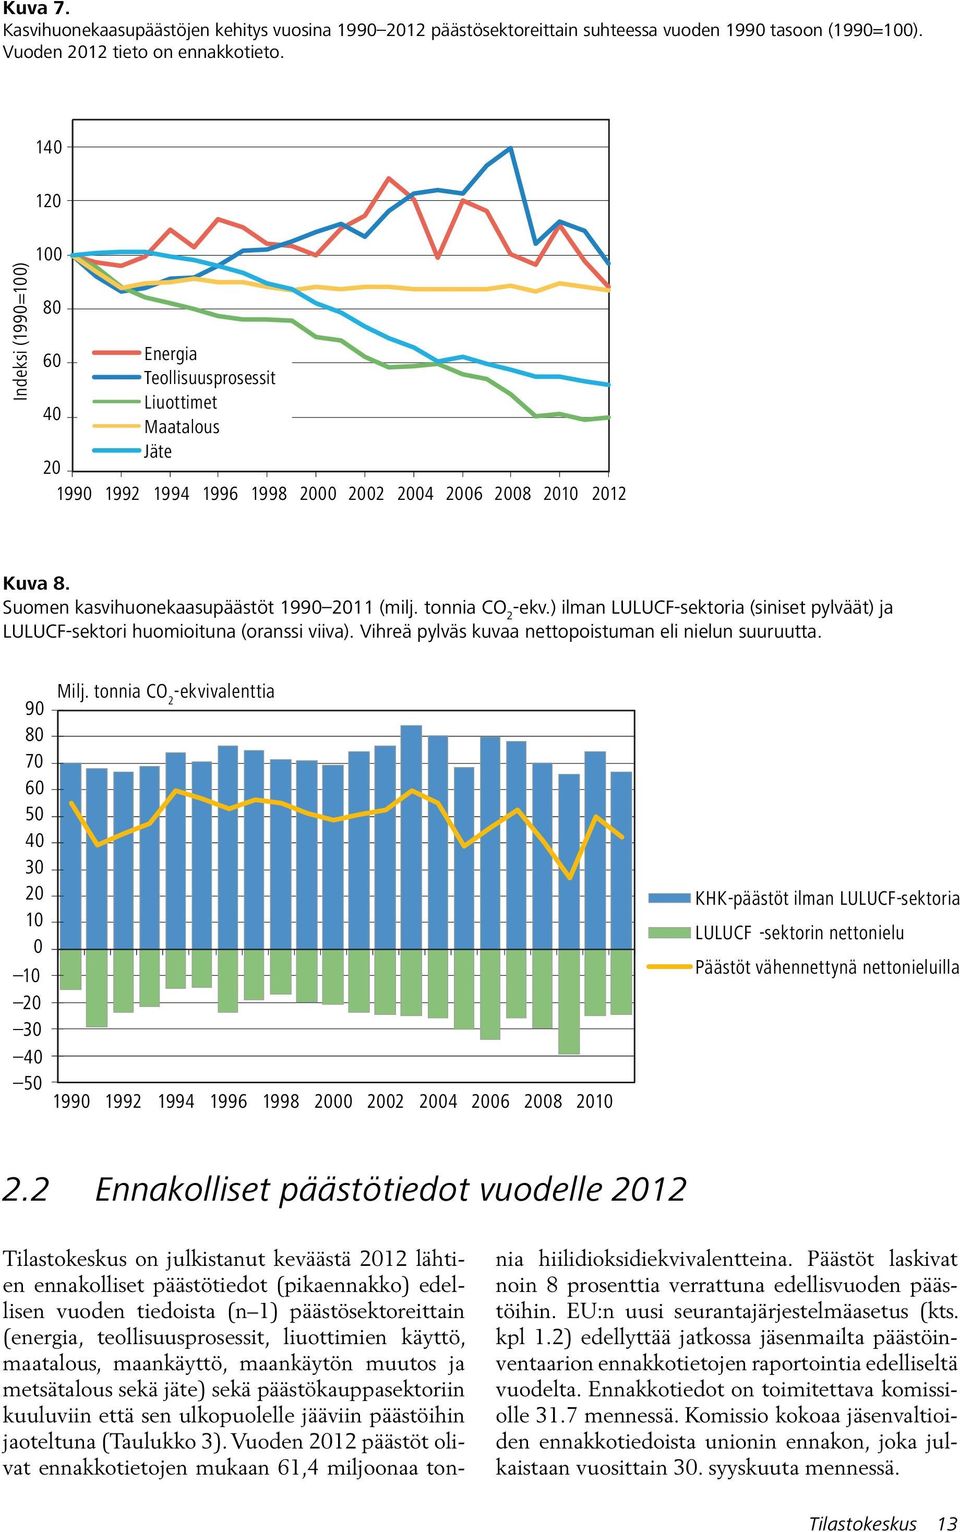 Suomen kasvihuonekaasupäästöt 1990 2011 (milj. tonnia CO 2 -ekv.) ilman LULUCF-sektoria (siniset pylväät) ja LULUCF-sektori huomioituna (oranssi viiva).